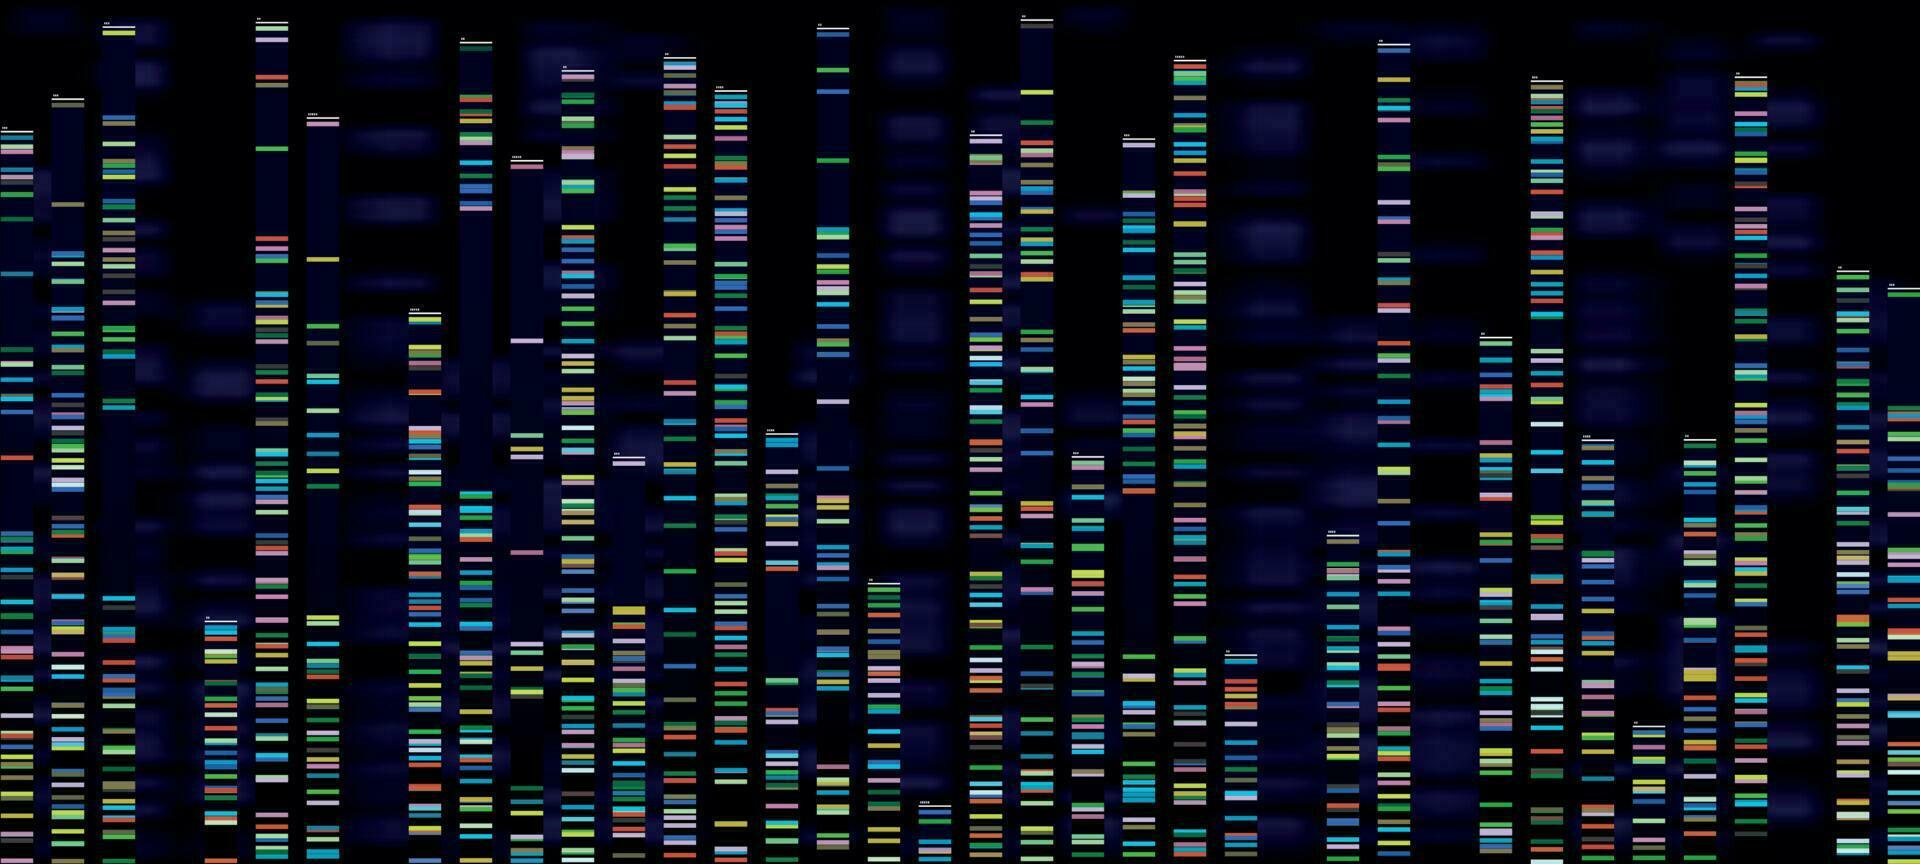 génomique une analyse visualisation. ADN génomes séquençage, désoxyribonucléique acide génétique carte et génome séquence analyser vecteur concept